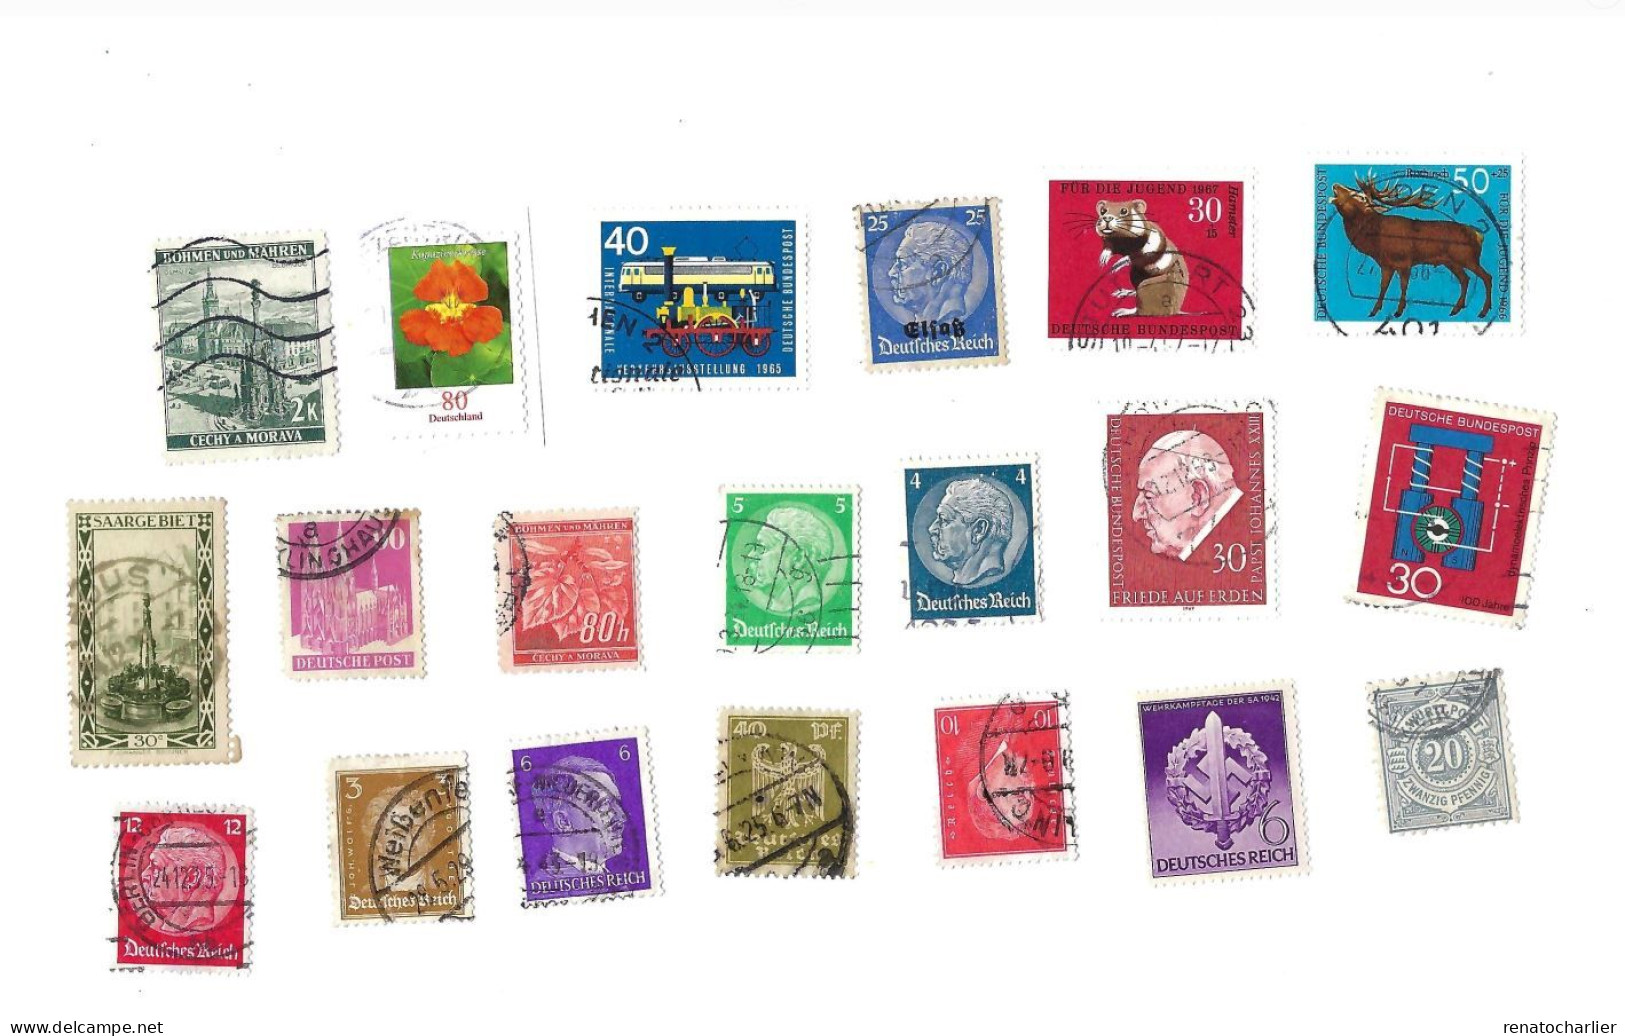 Collection de 105 timbres  oblitérés.